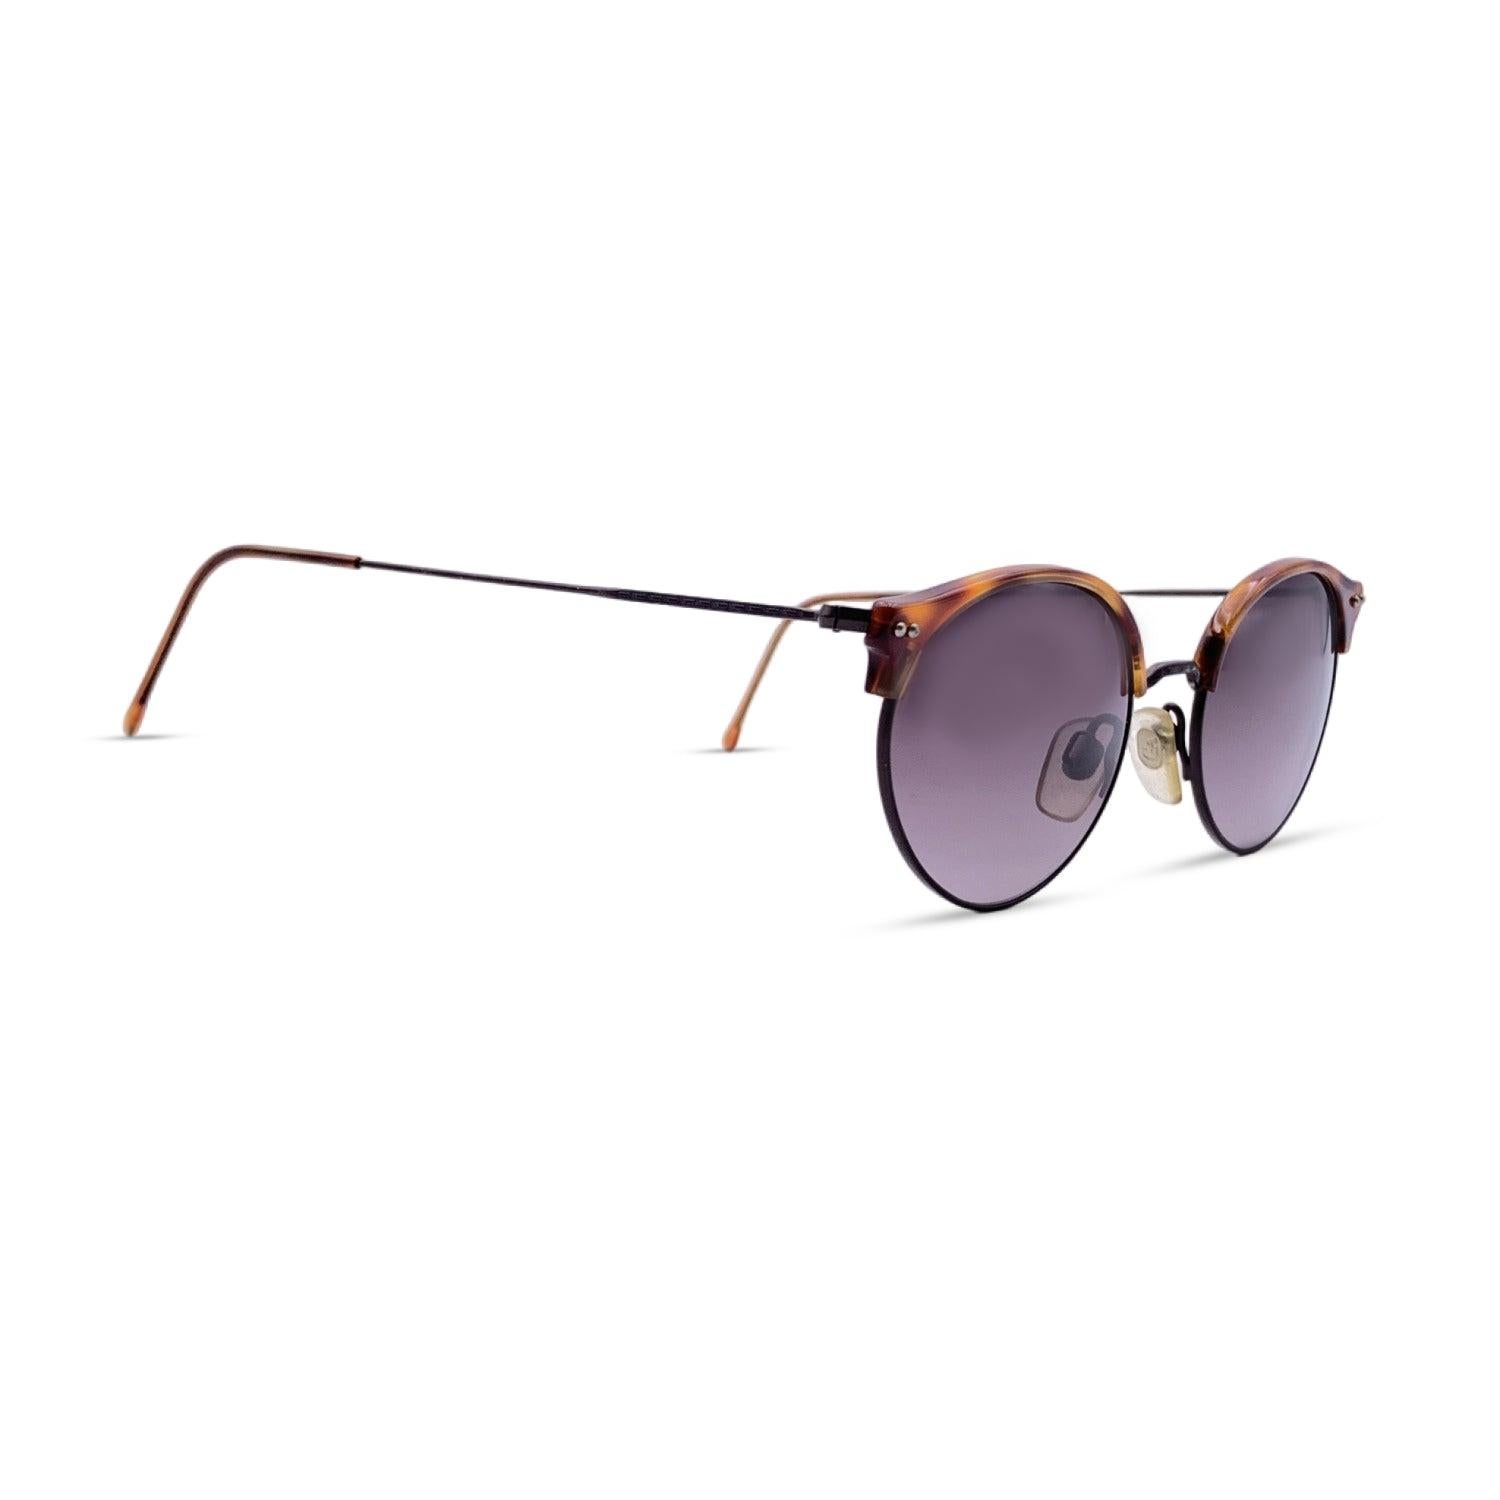 Giorgio Armani Vintage Brown Sunglasses Mod. 377 col. 015 47/20 140mm In Excellent Condition For Sale In Rome, Rome